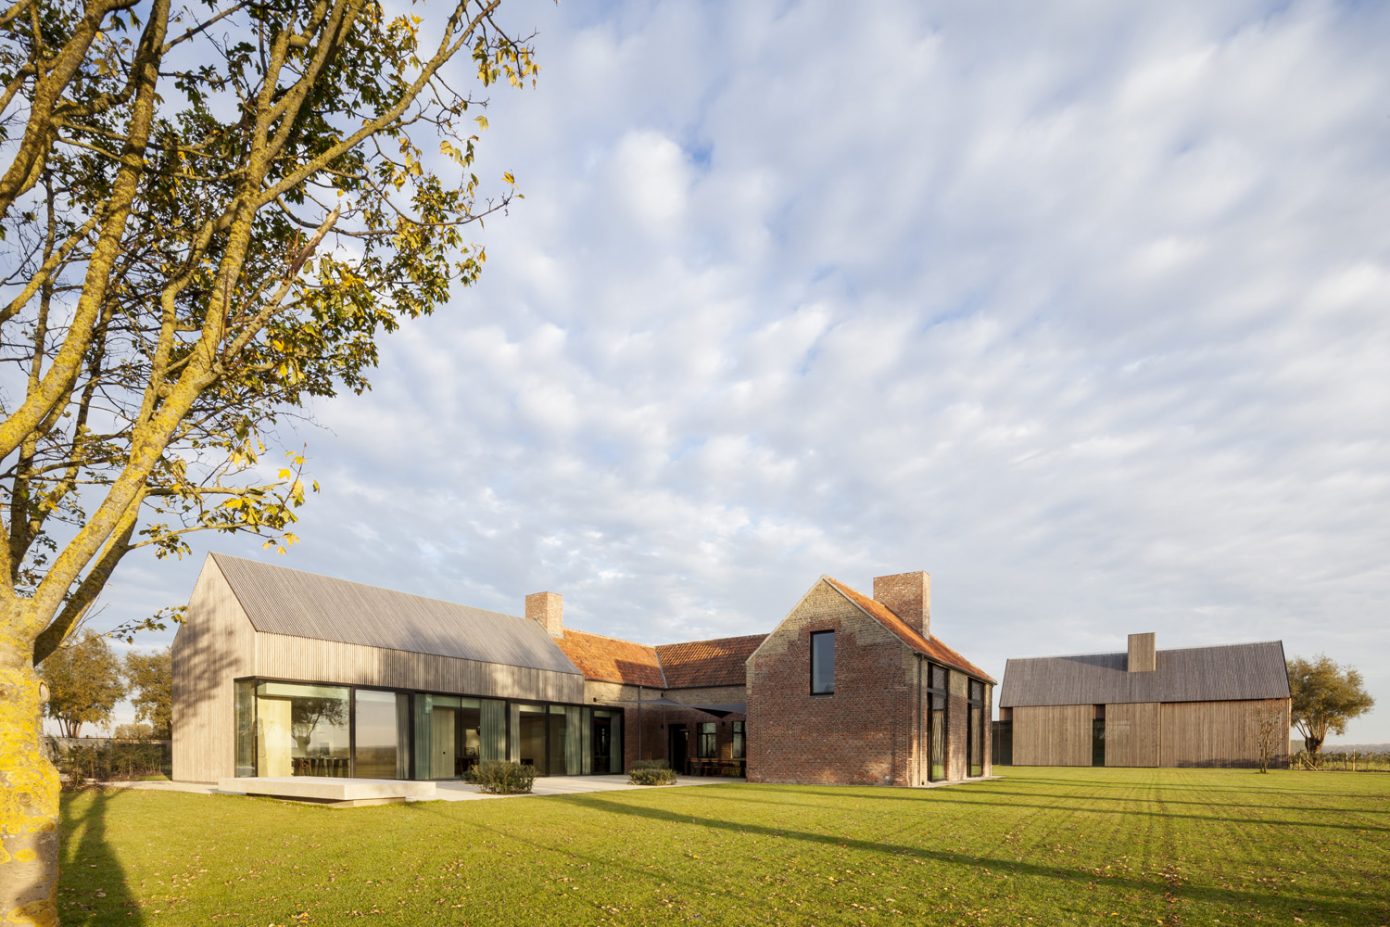 Farmhouse in Knokke-Heist by Govaert & Vanhoutte Architects